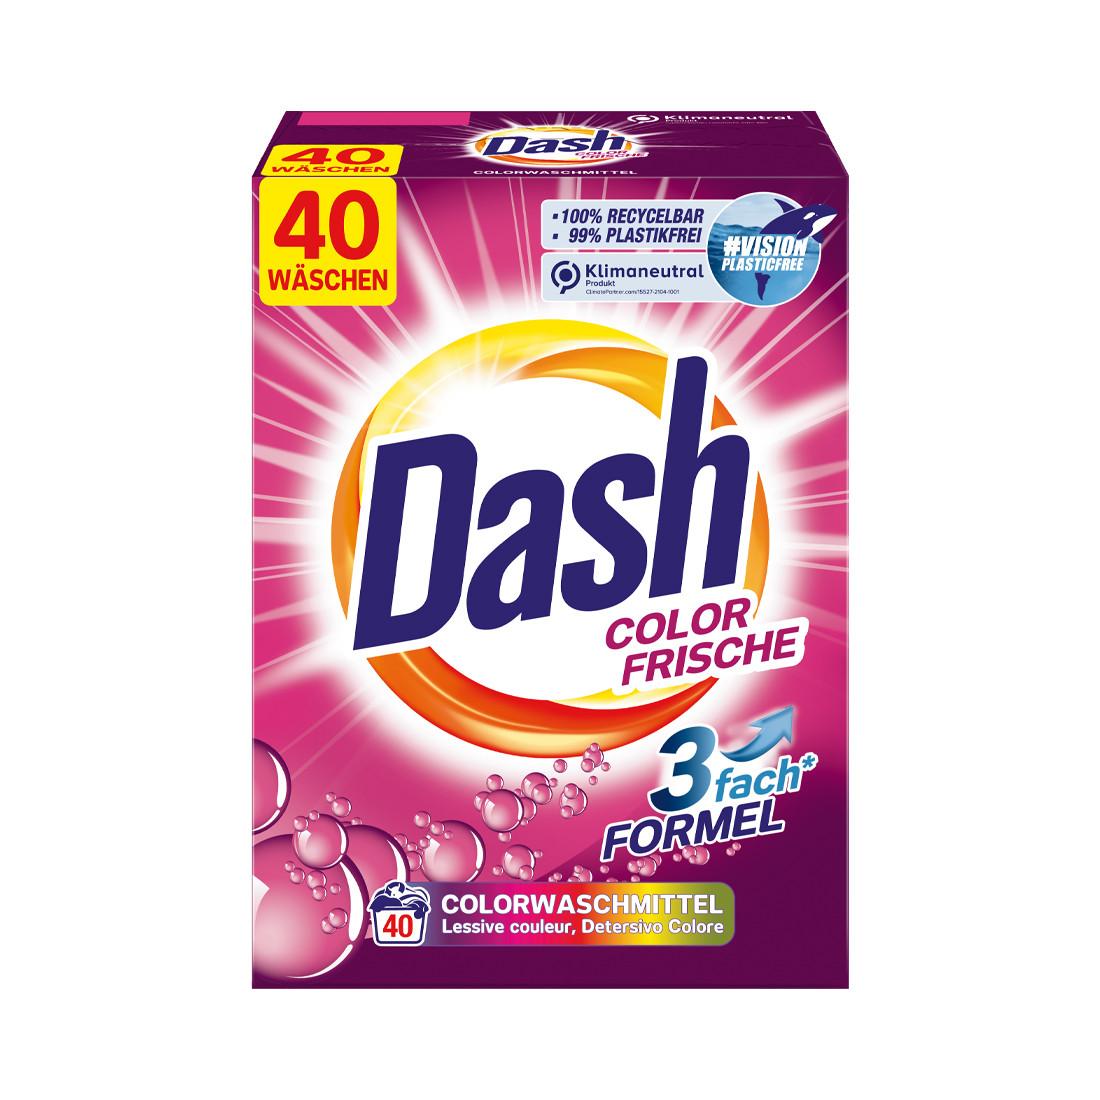 DASH Colorwaschmittel Color Frische 2.6 Kg  